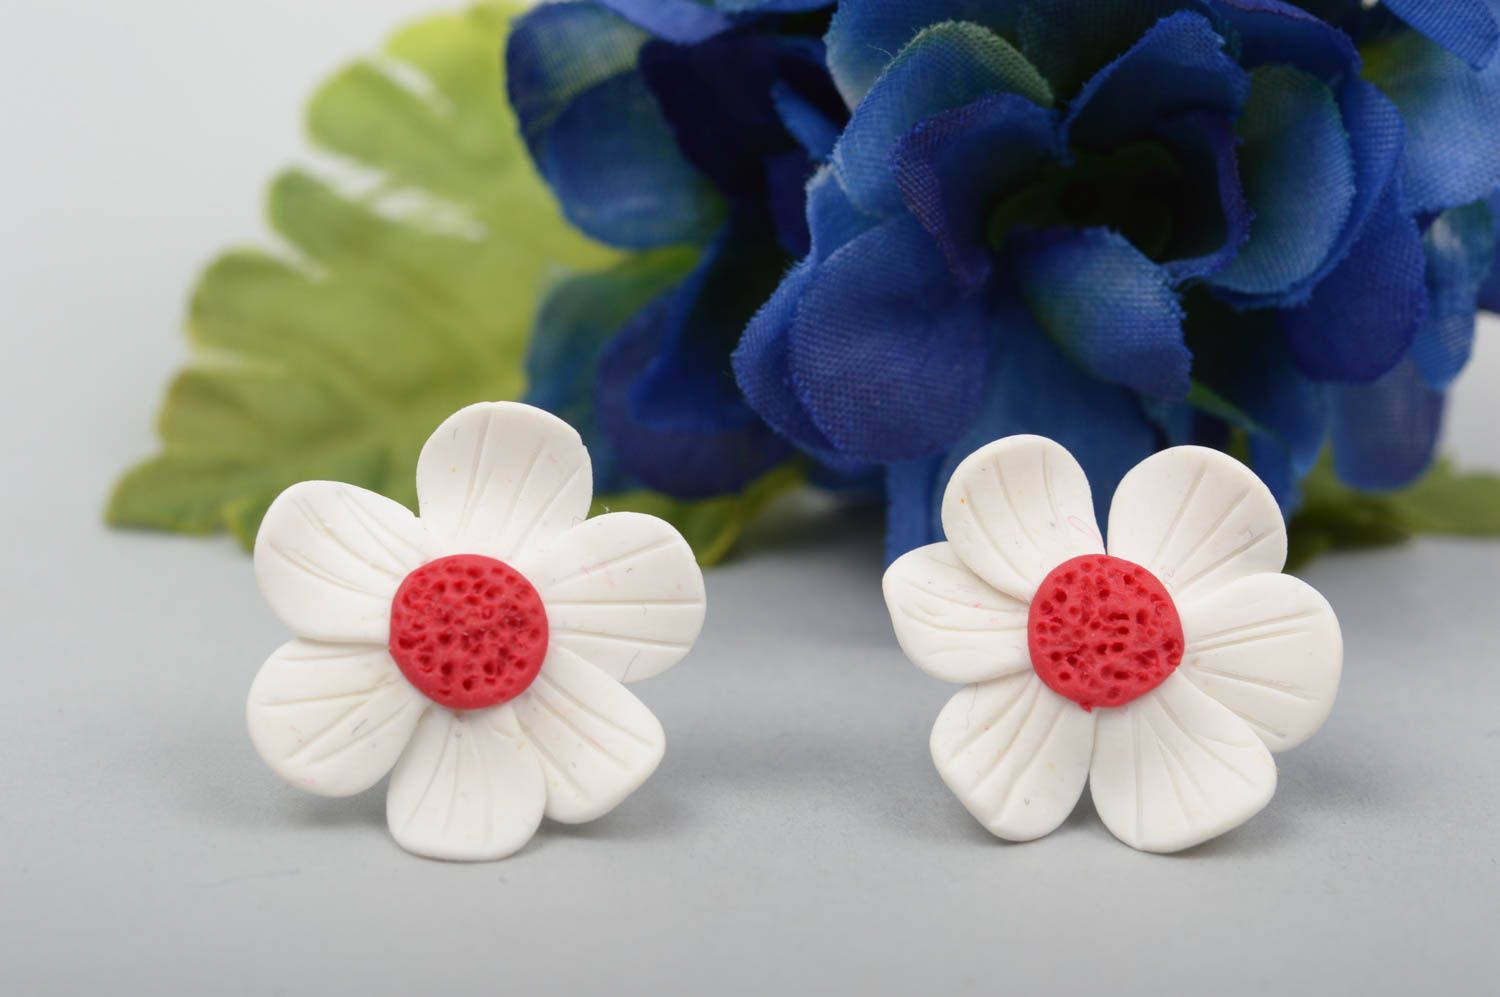 Flower jewelry handmade earrings polymer clay stud earrings best gifts for women photo 1